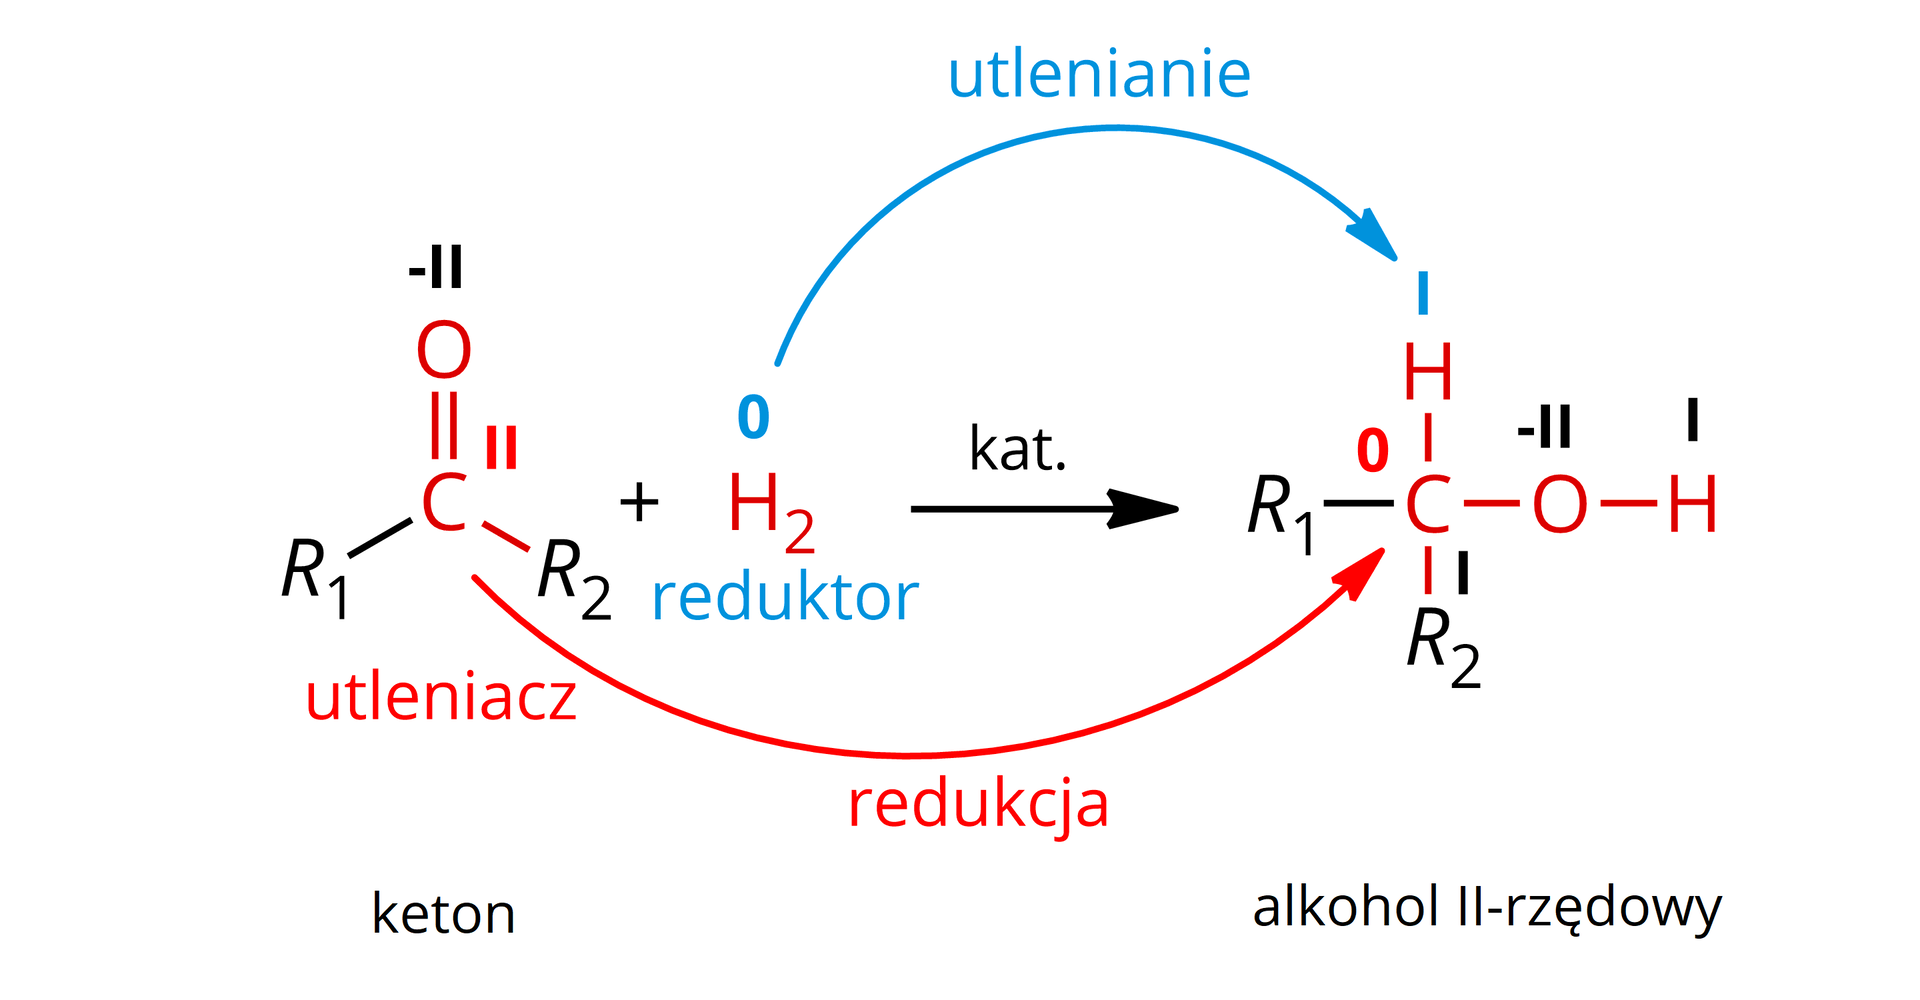 Ilustracja przedstawiająca schemat ogólny reakcji uwodornienia ketonów do drugorzędowych alkoholi. Cząsteczka ketonu pełniącego rolę utleniacza zbudowanego z atomu węgla na drugim stopniu utlenienia połączonego za pomocą wiązania podwójnego z atomem tlenu na minus drugim stopniu utlenienia oraz za pomocą wiązań pojedynczych z dwoma podstawnikami R1 oraz R2. Dodać cząsteczkę wodoru H2 pełniącego rolę reduktora, w której atomy wodoru znajdują się na zerowym stopniu utlenienia. Strzałka w prawo, nad strzałką zapis "katalizator". W wyniku reakcji keton uległ redukcji, zaś wodór utlenieniu. Za strzałką cząsteczka drugorzędowego alkoholu zbudowanego z atomu węgla na zerowym stopniu utlenienia połączonego za pomocą wiązań pojedynczych z czterema podstawnikami, to jest atomem wodoru na pierwszym stopniu utlenienia, grupą hydroksylową OH zawierającą atom tlenu na minus drugim stopniu utlenienia i atom wodoru na pierwszym oraz dwiema grupami R1 i R2.